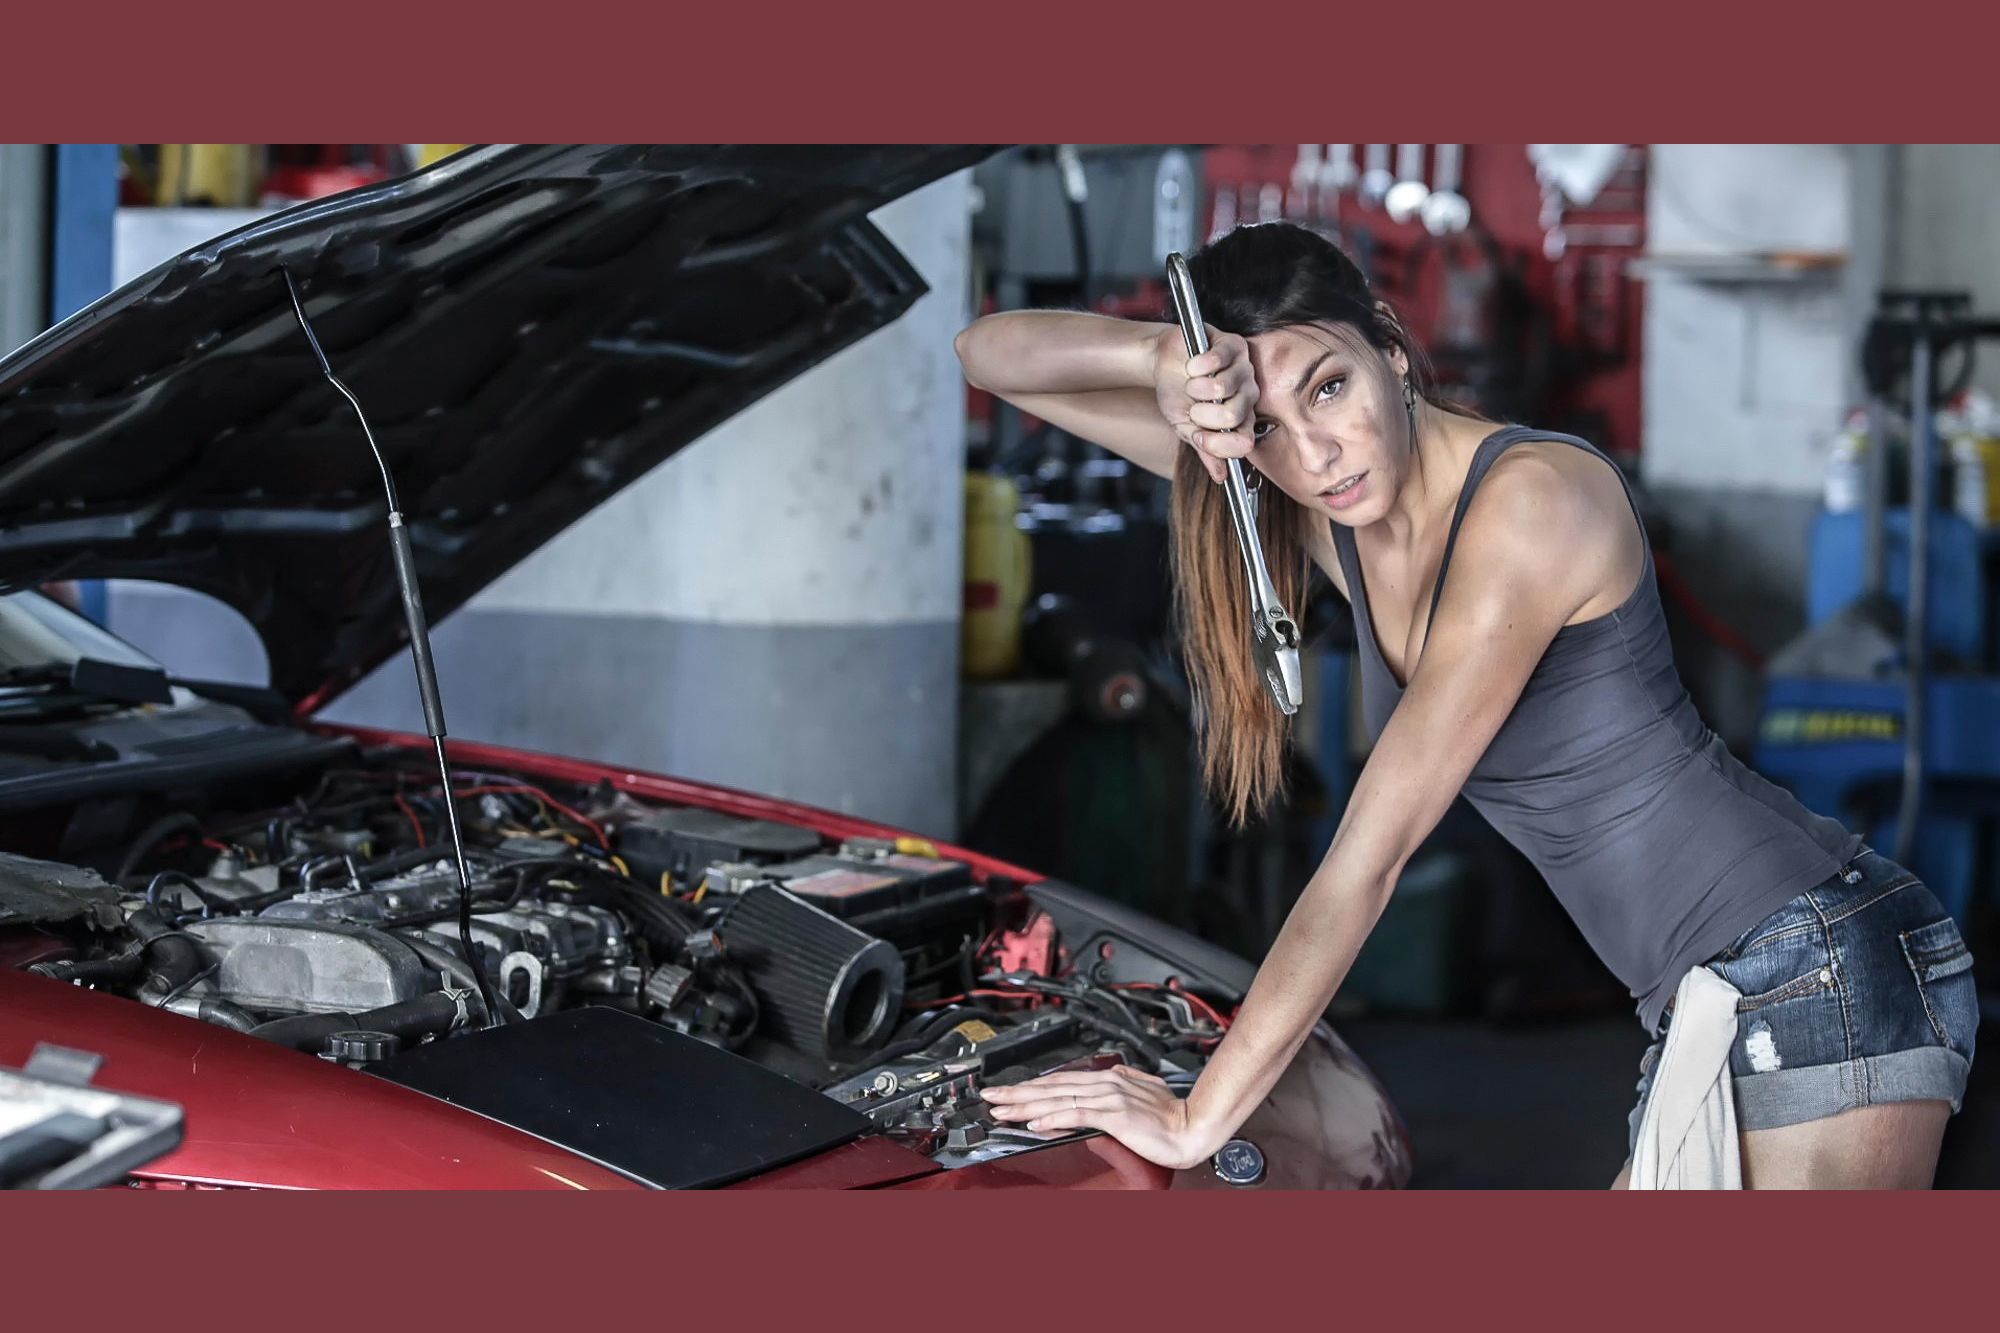 She fixes cars. Меган Фокс автомеханик. Девушка ремонтирует машину. Девушка в автосервисе. Девушка чинит машину.